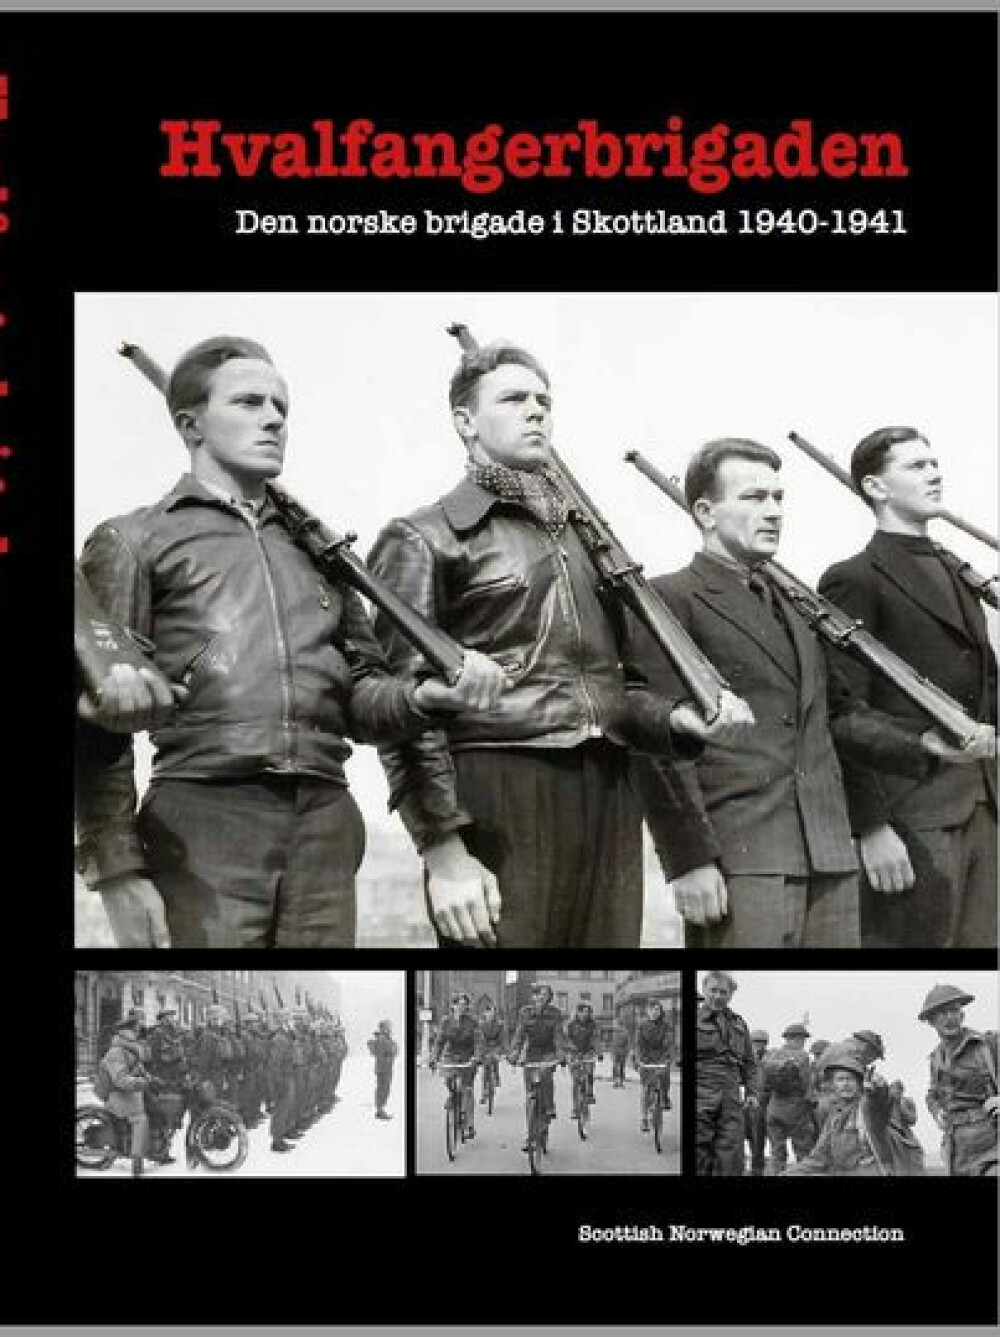 <b>BOK:</b> Scottish Norwegian Connection har researchet og skrevet boken om Hvalfanger­brigaden.